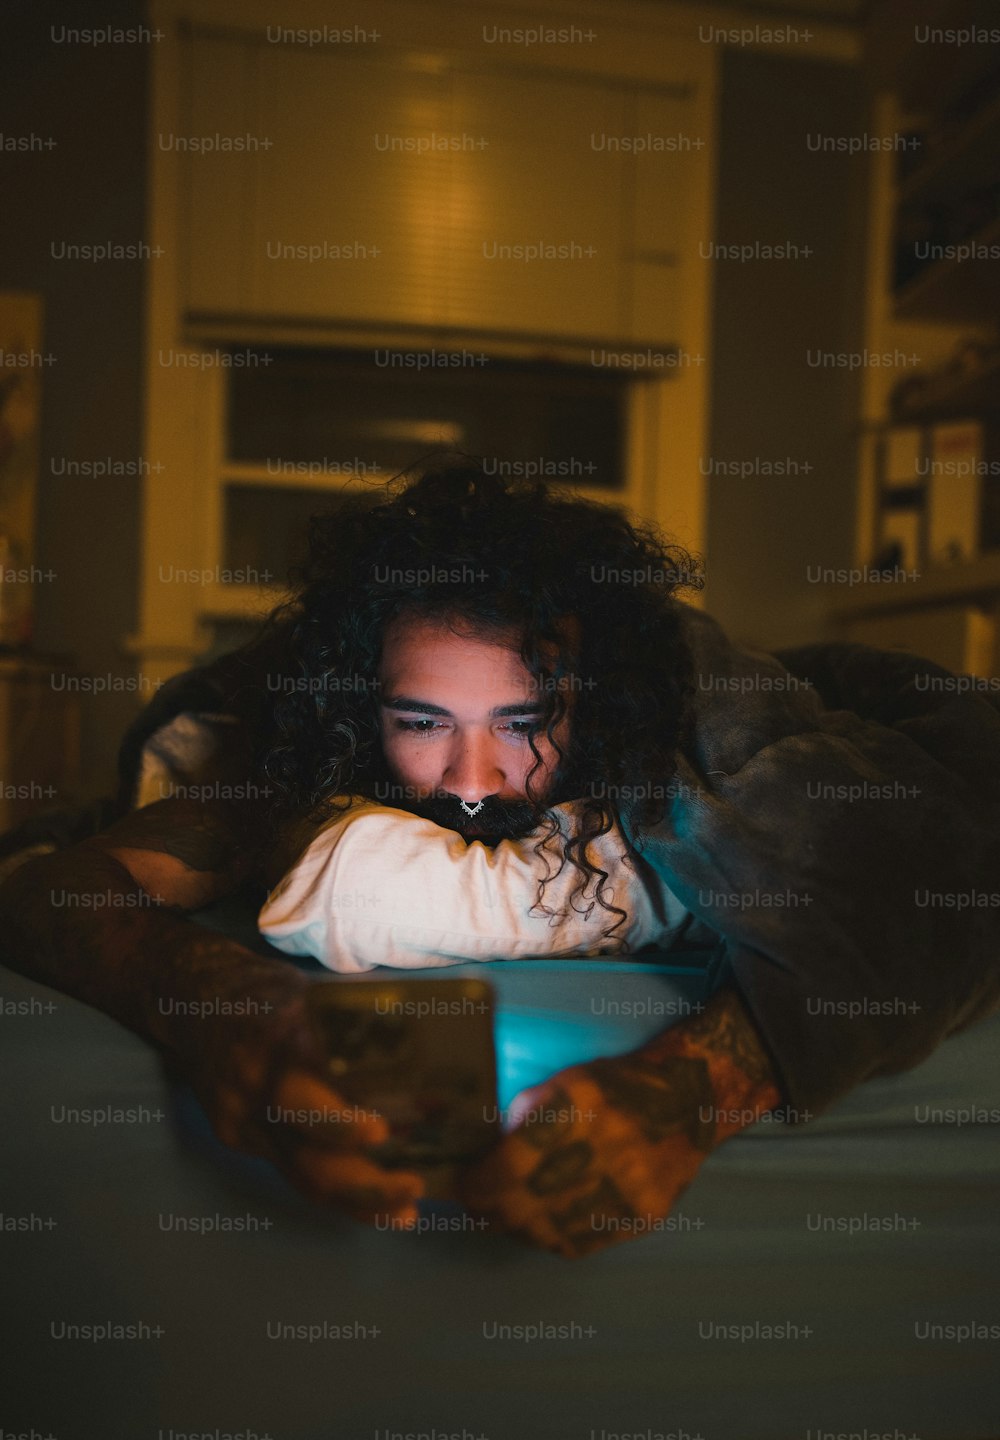 Una mujer acostada en una cama mirando un teléfono celular